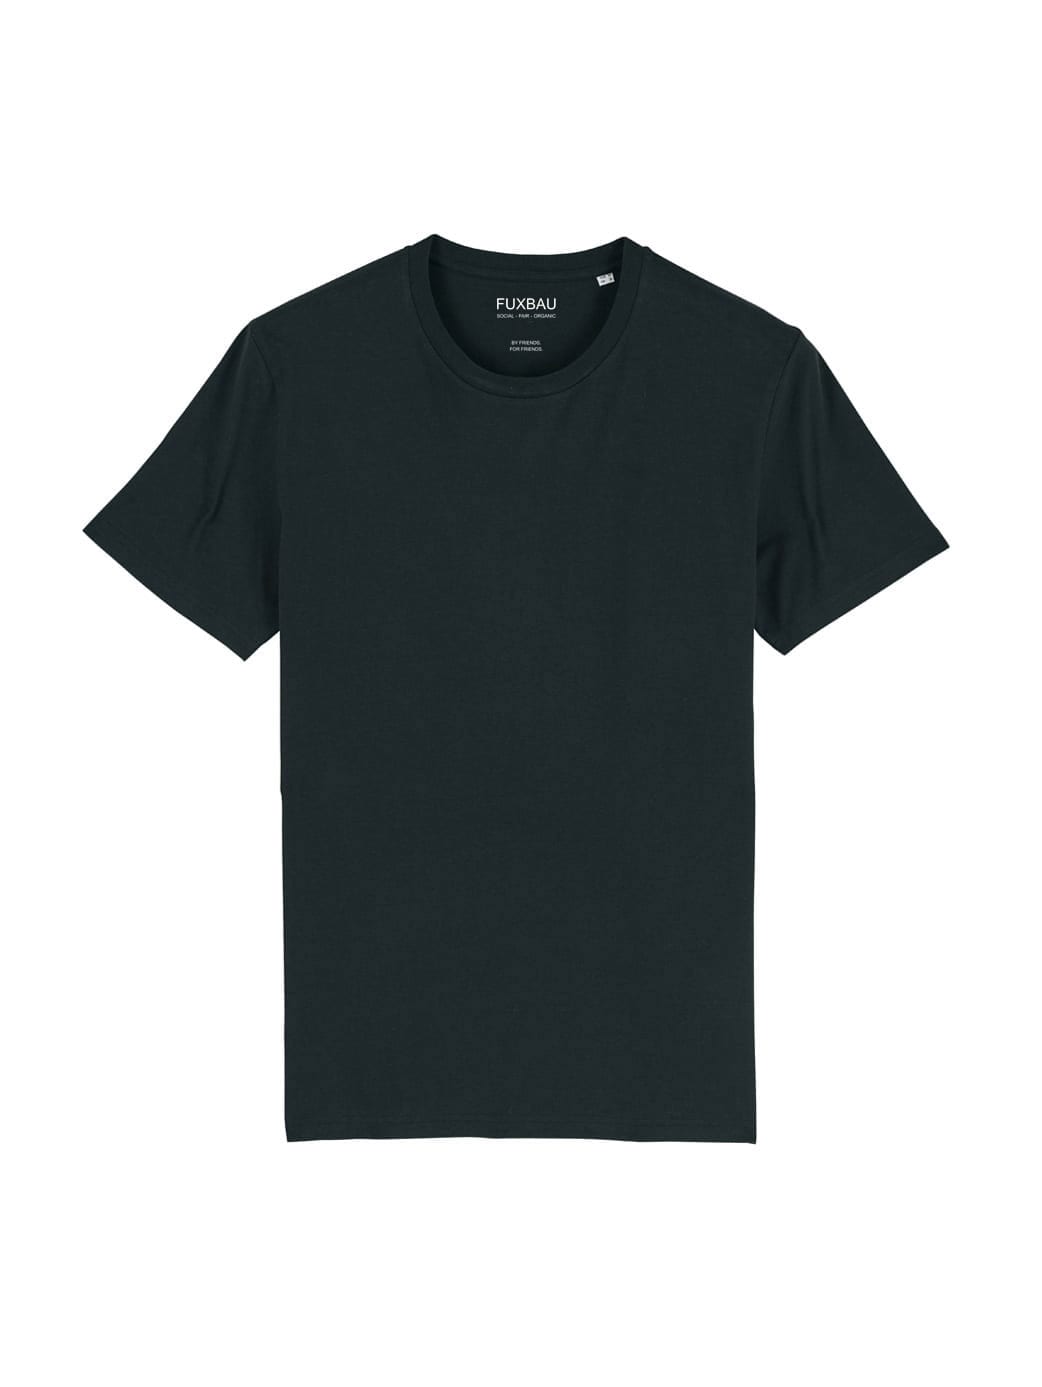 Nachhaltiges Fair Fashion Unisex Standard Basic T-Shirt in schwarz von FUXBAU aus 100% GOTS zertifizierter Biobaumwolle.